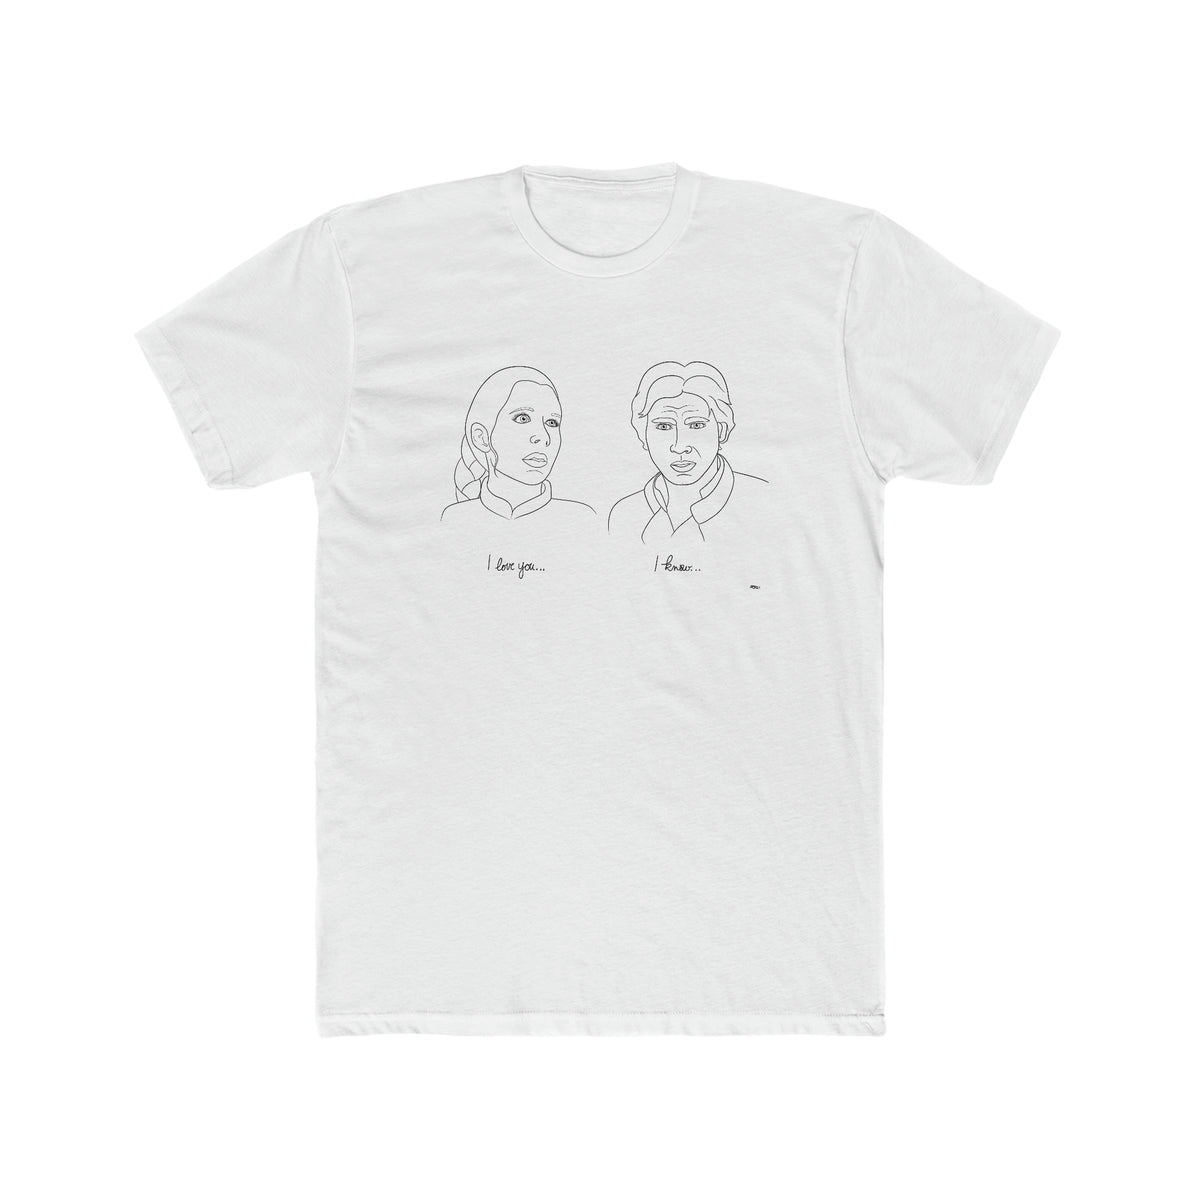 Han & Leia "I Love You" T-Shirt